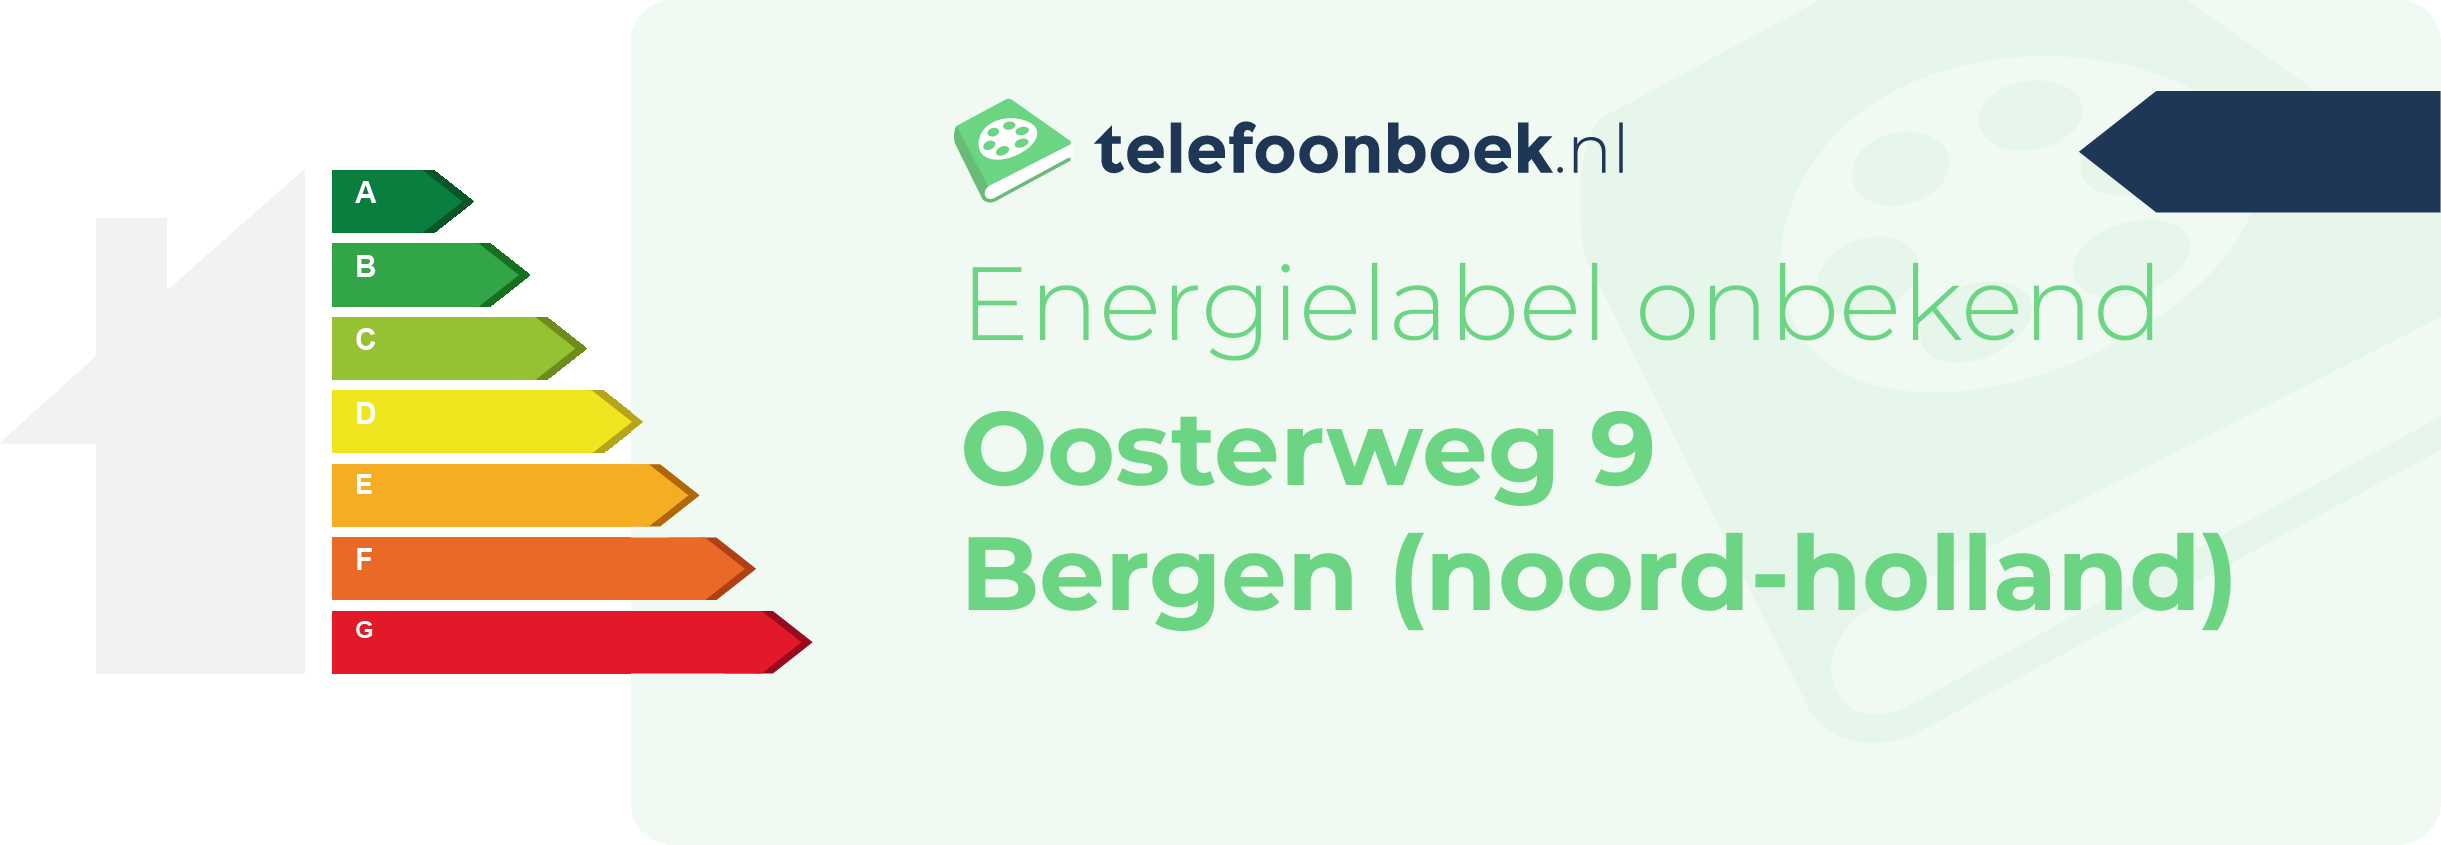 Energielabel Oosterweg 9 Bergen (Noord-Holland)